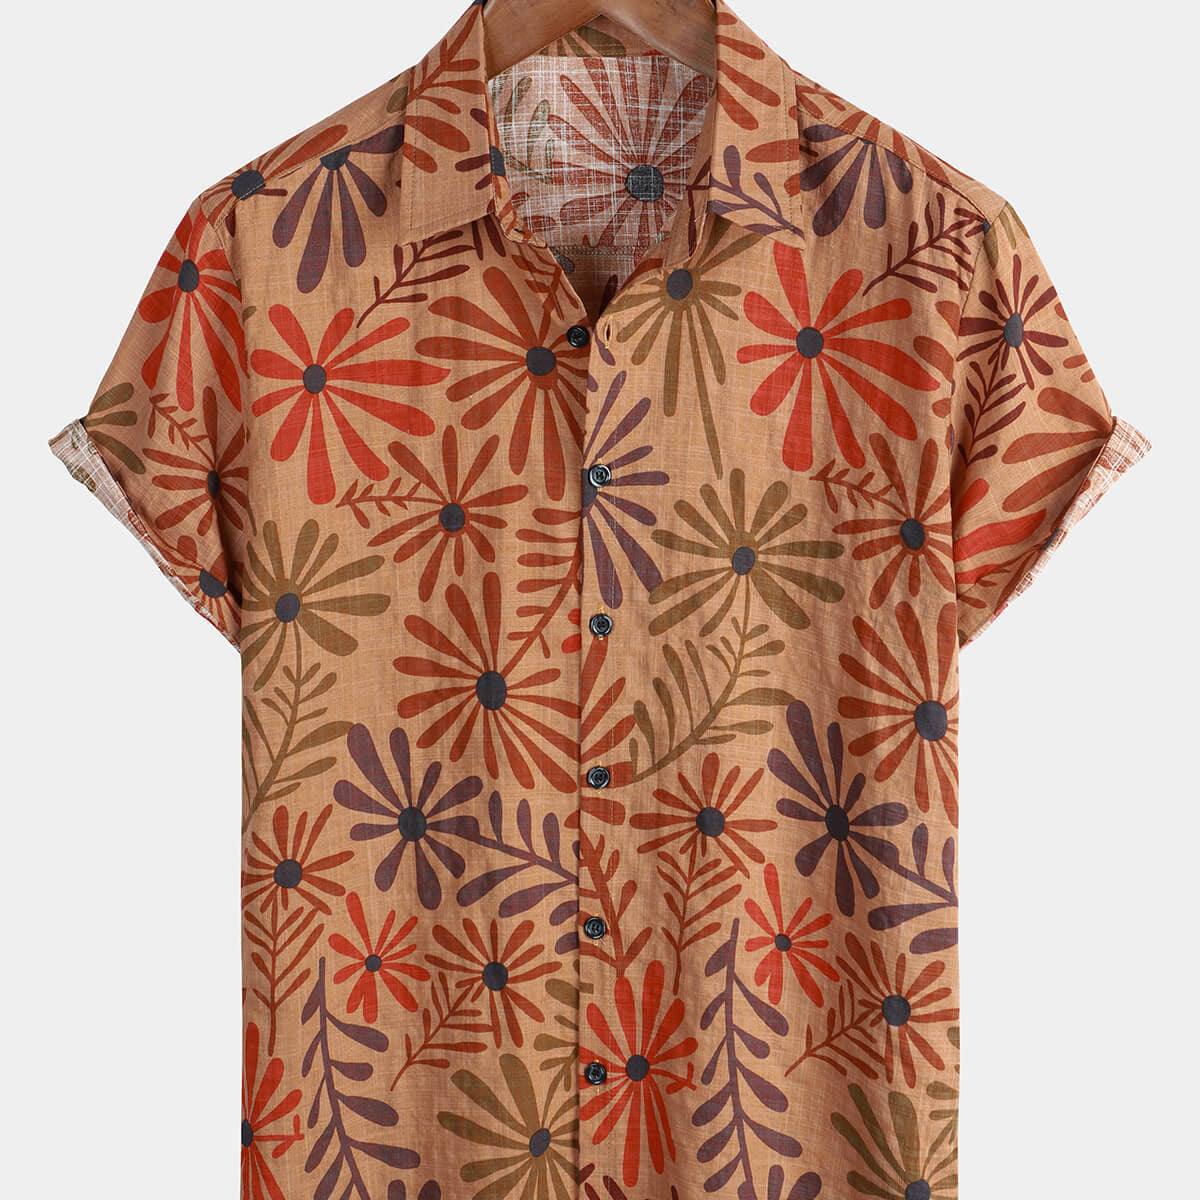 Men's Beach Floral Hawaiian Button Up Summer Shirt